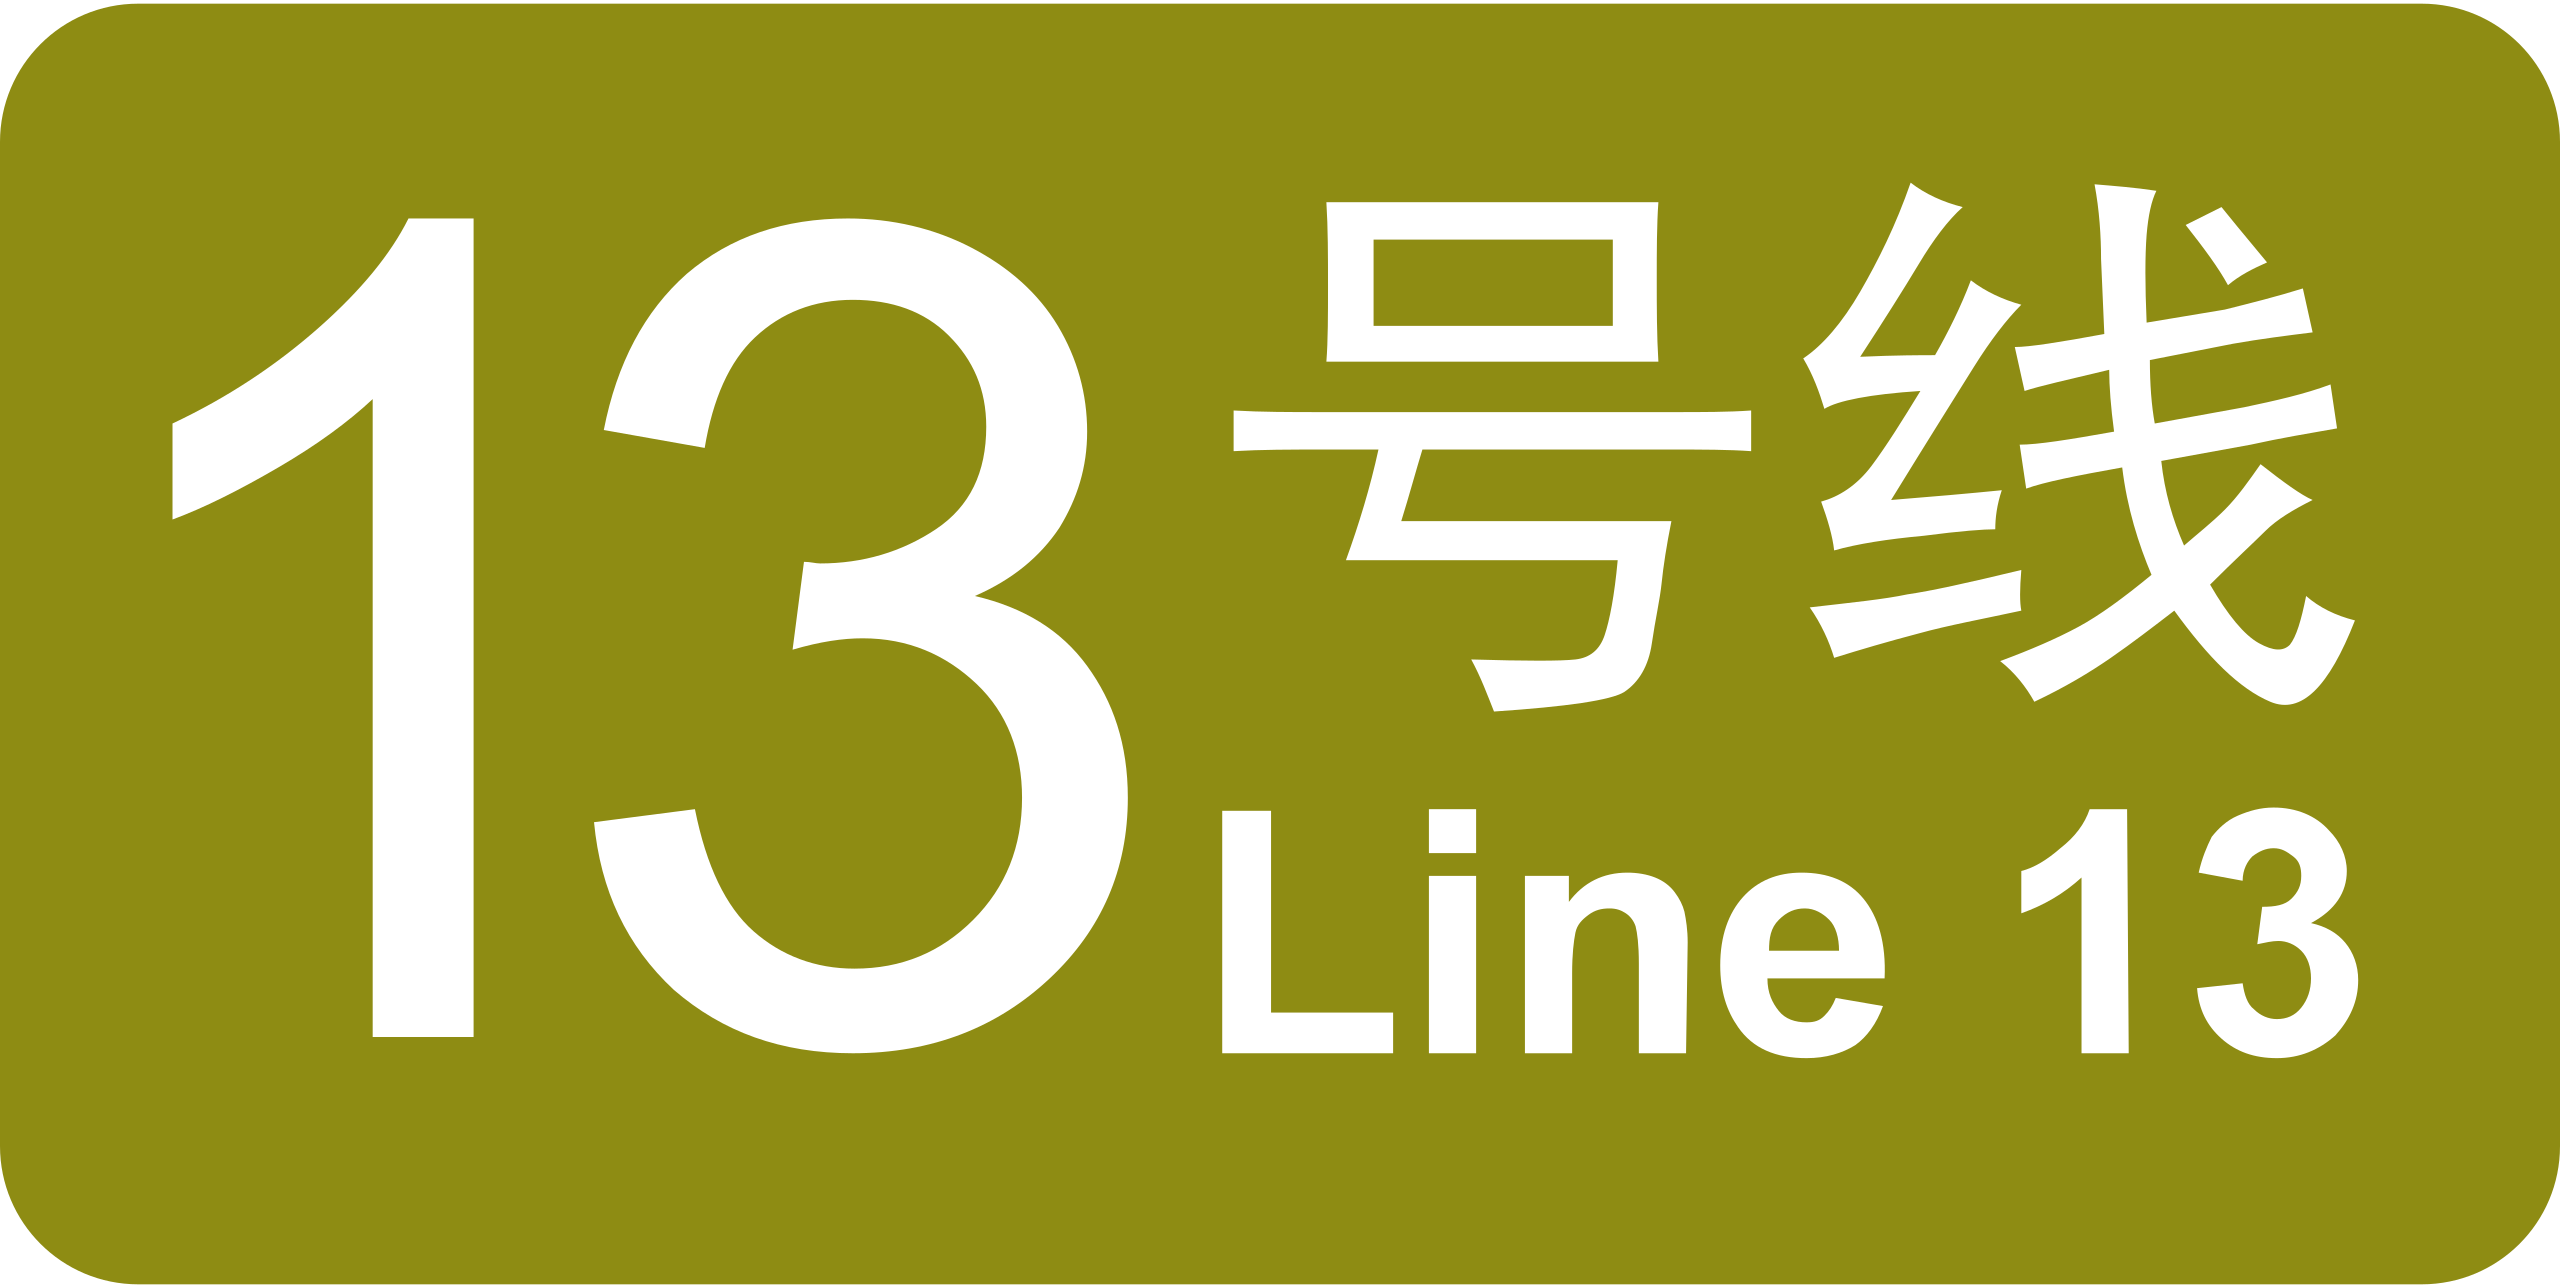 13 линия 1. Linea 13. Xinsha Huangpu.